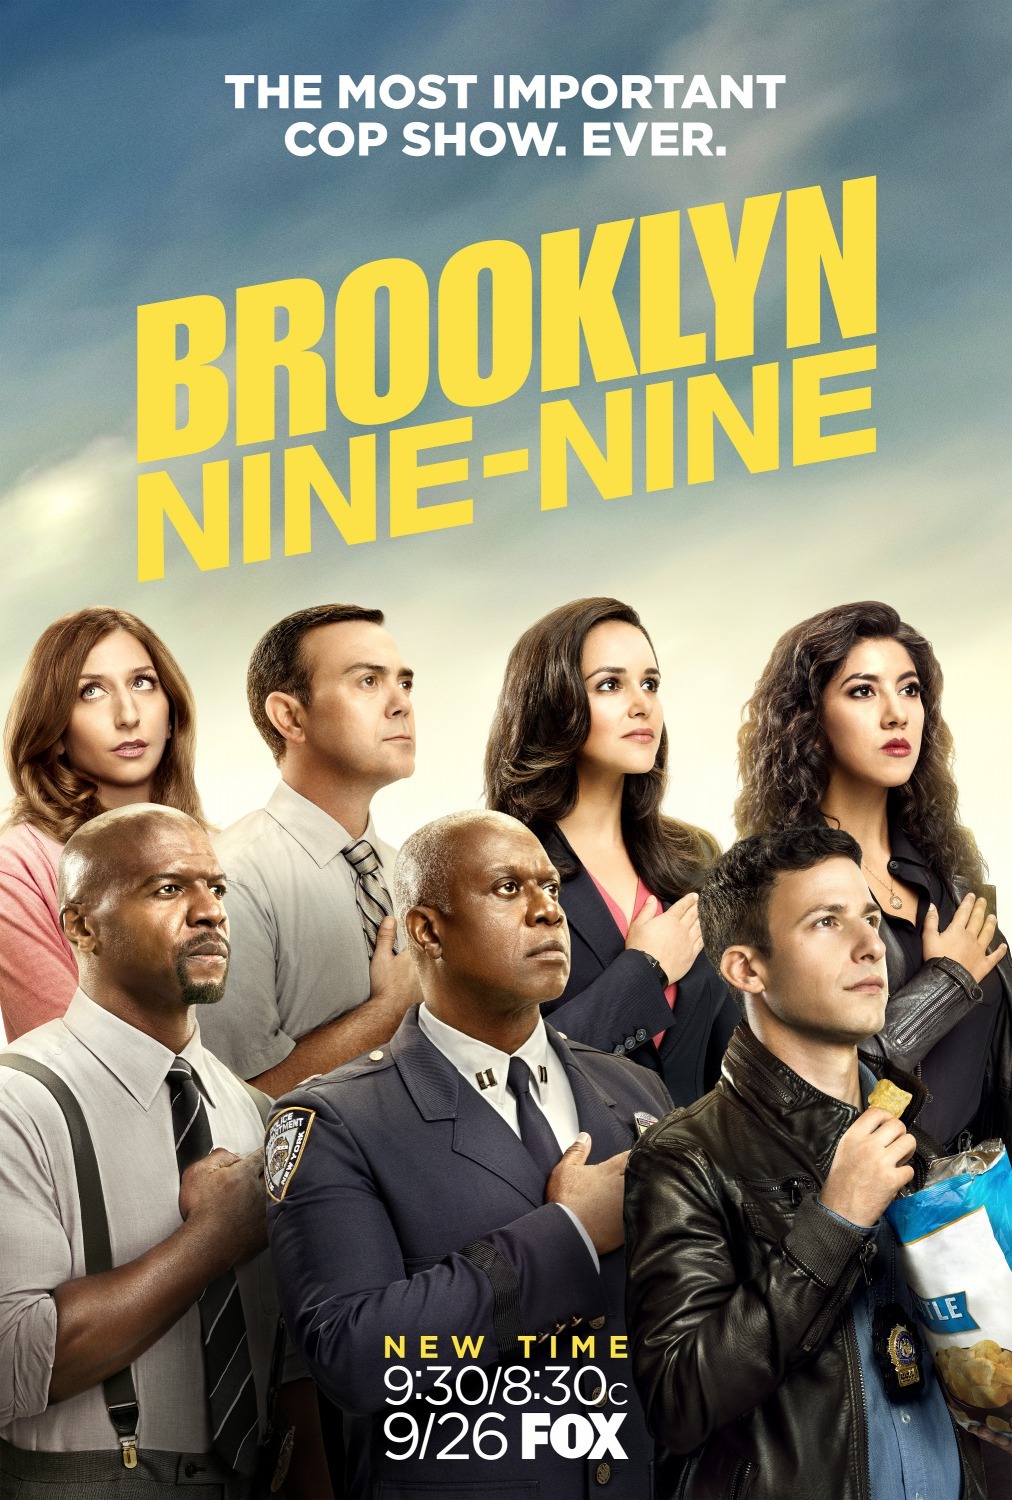 ดูหนังออนไลน์ฟรี Brooklyn Nine-Nine Season 4 EP.15 บรู๊คลินเก้า ปี 4 ตอนที่ 15